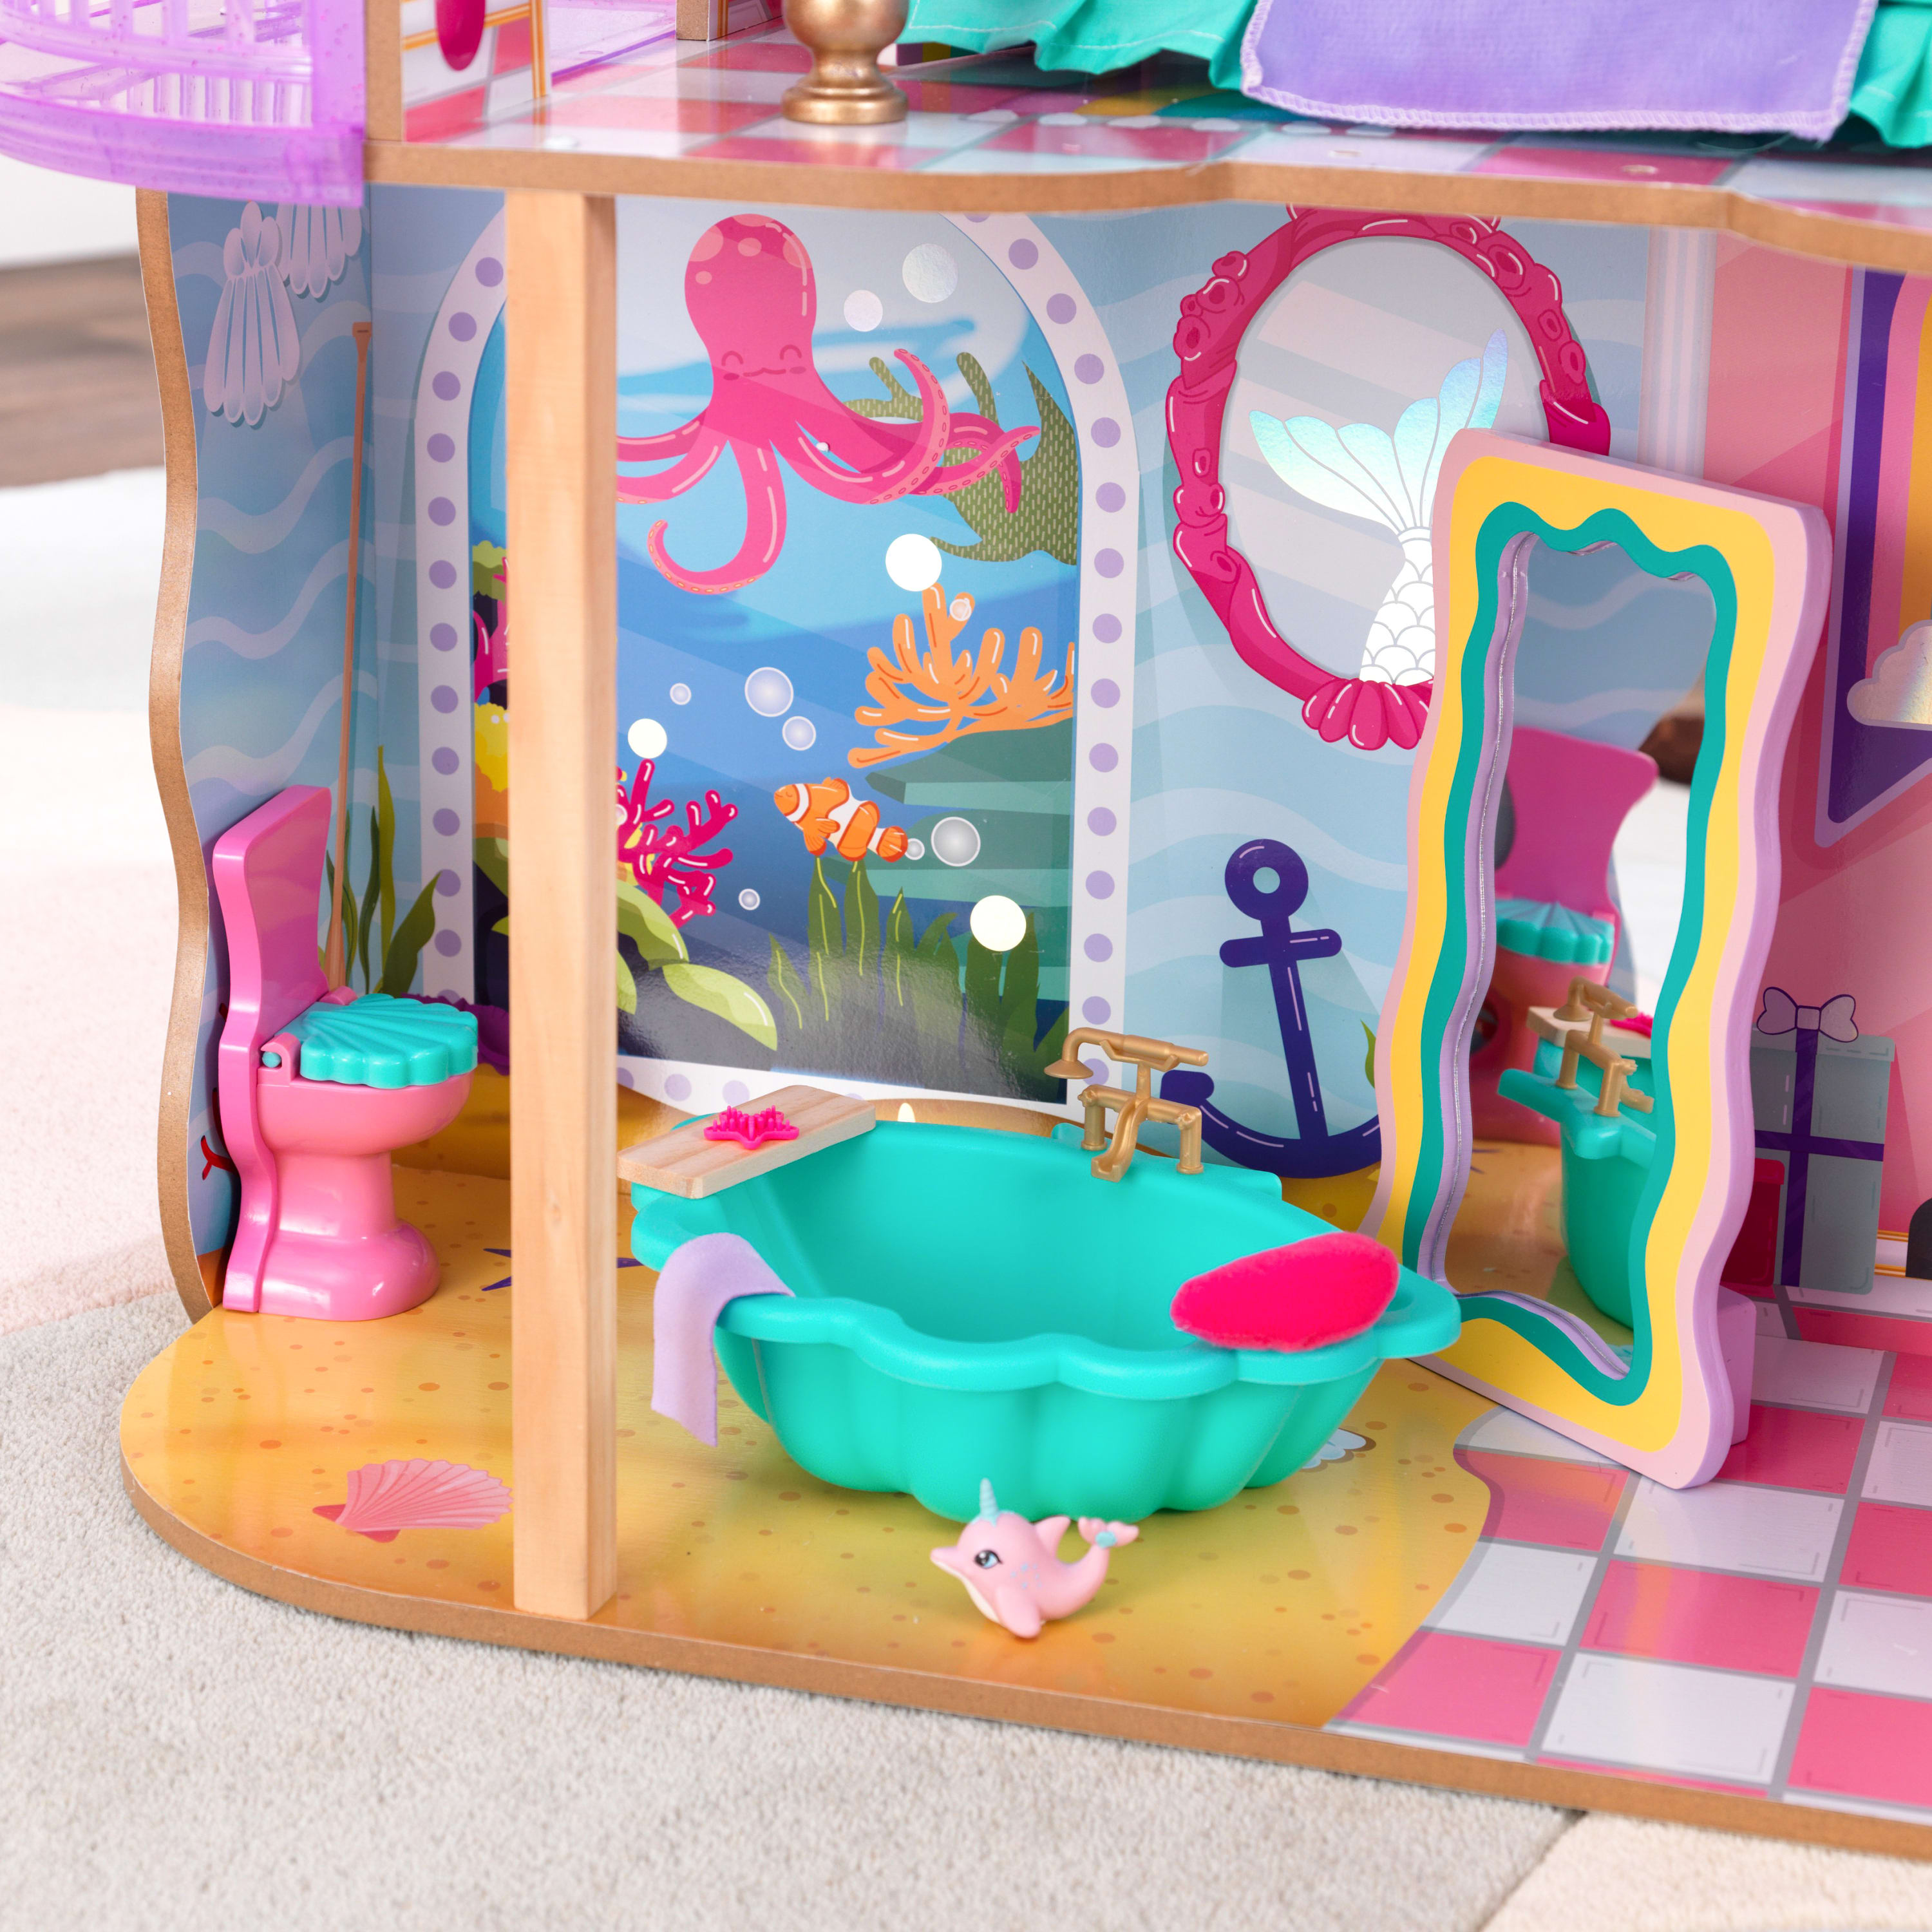 KidKraft Rainbow Dreamers Seashell Bathroom Dollhouse Furniture, 8 Pieces - image 3 of 8